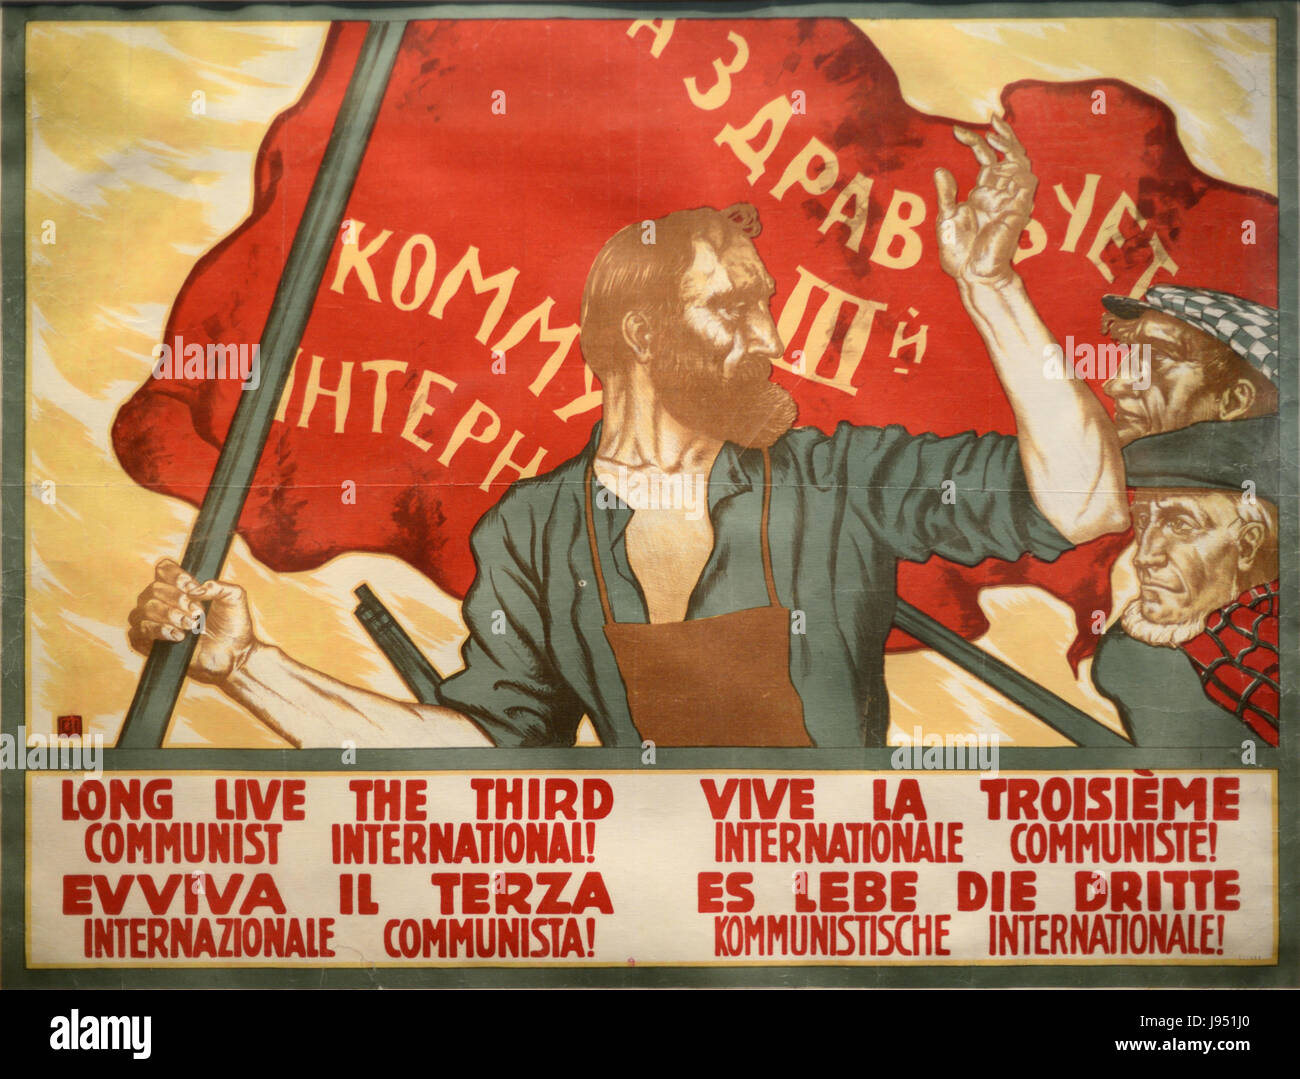 Affiche de propagande communiste russe Vintage Banque D'Images